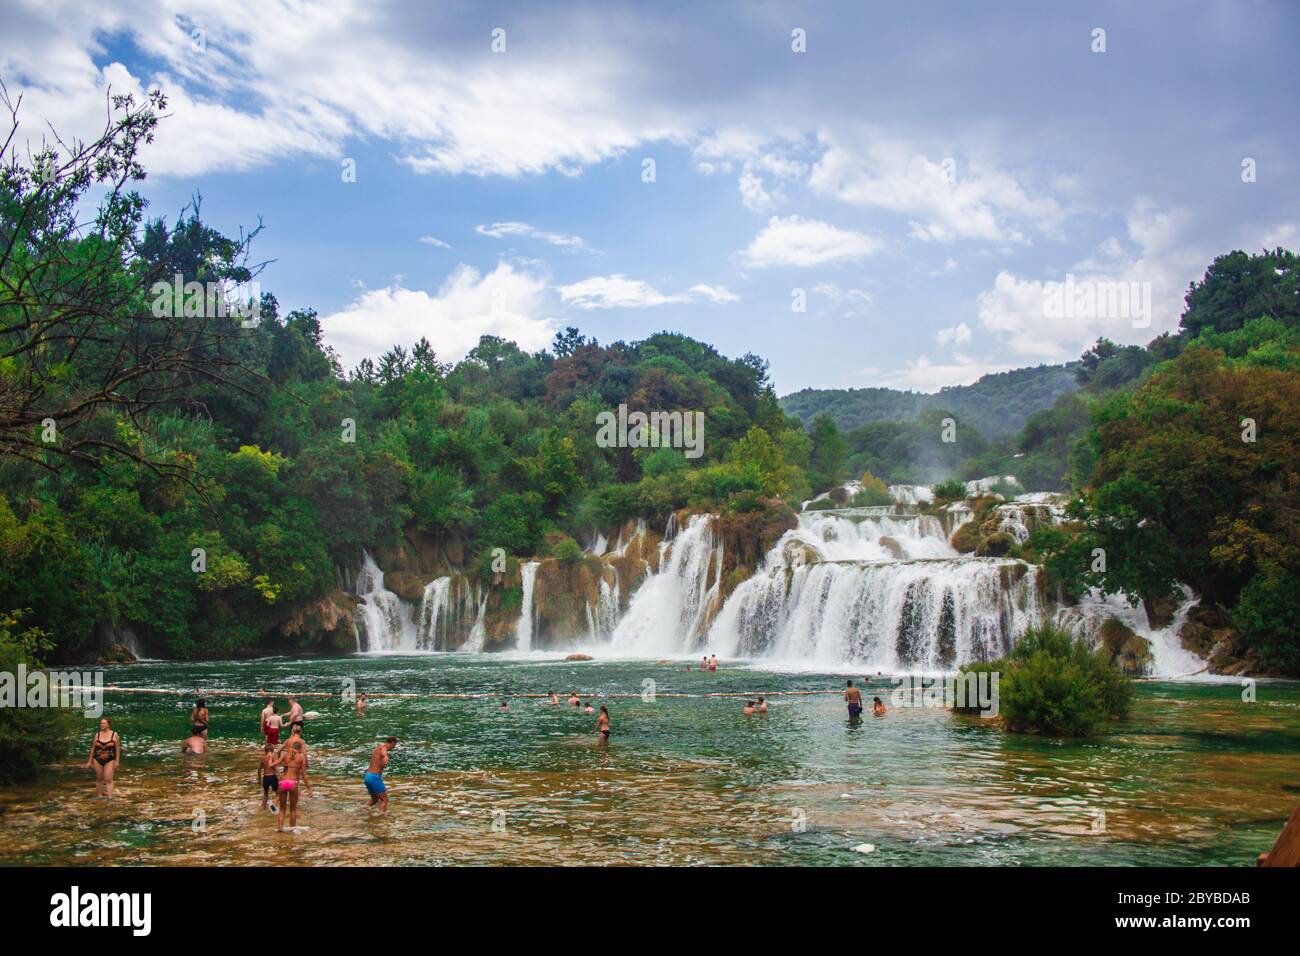 Parc national de Krka, Croatie - juillet 27 2018 : paysage sauvage et cascade à la célèbre attraction touristique en Croatie Banque D'Images